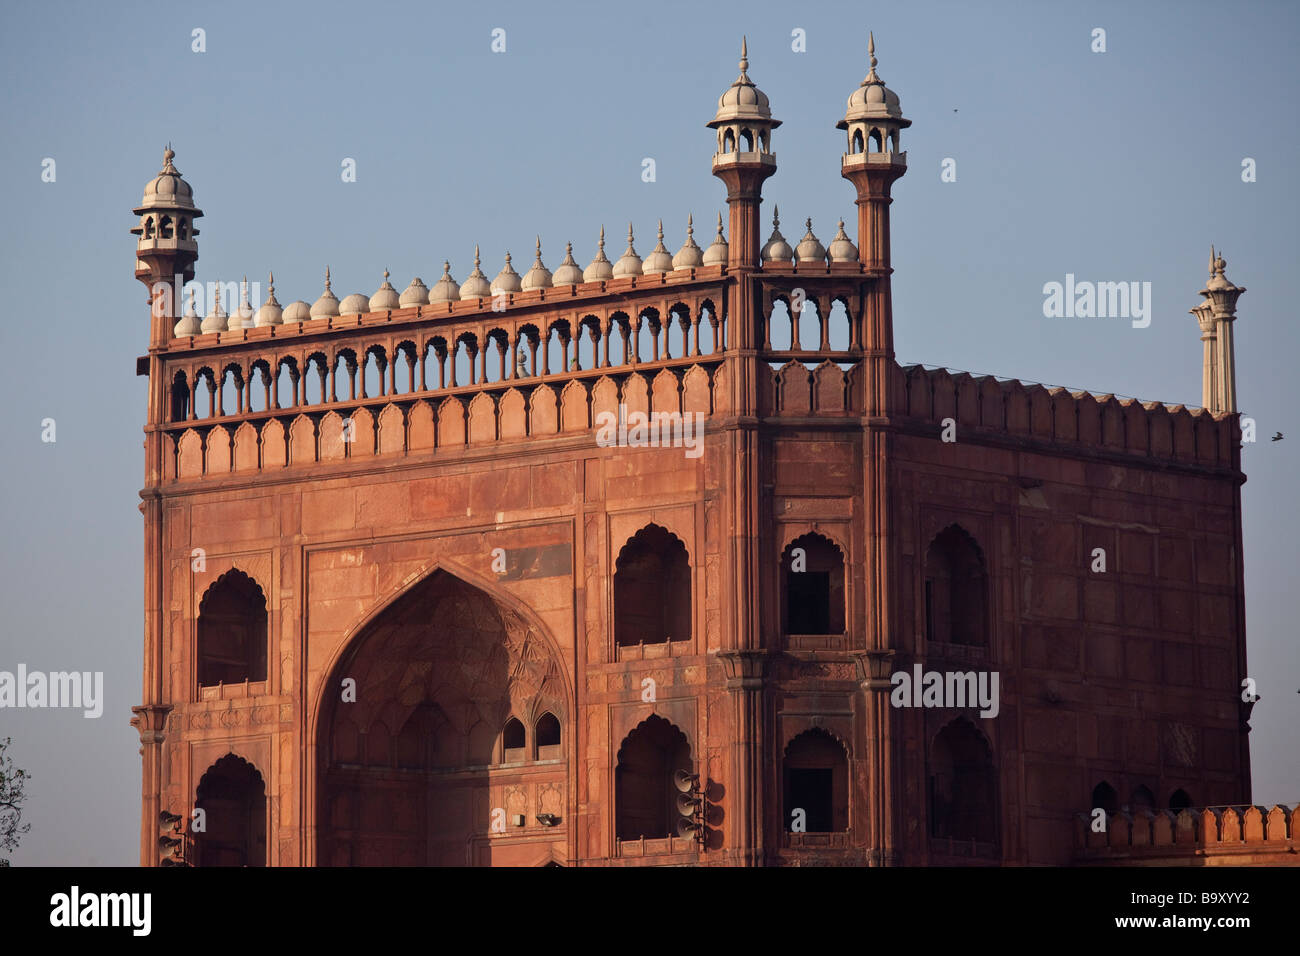 La Mosquée du Vendredi ou Jama Masjid à Delhi Inde Banque D'Images